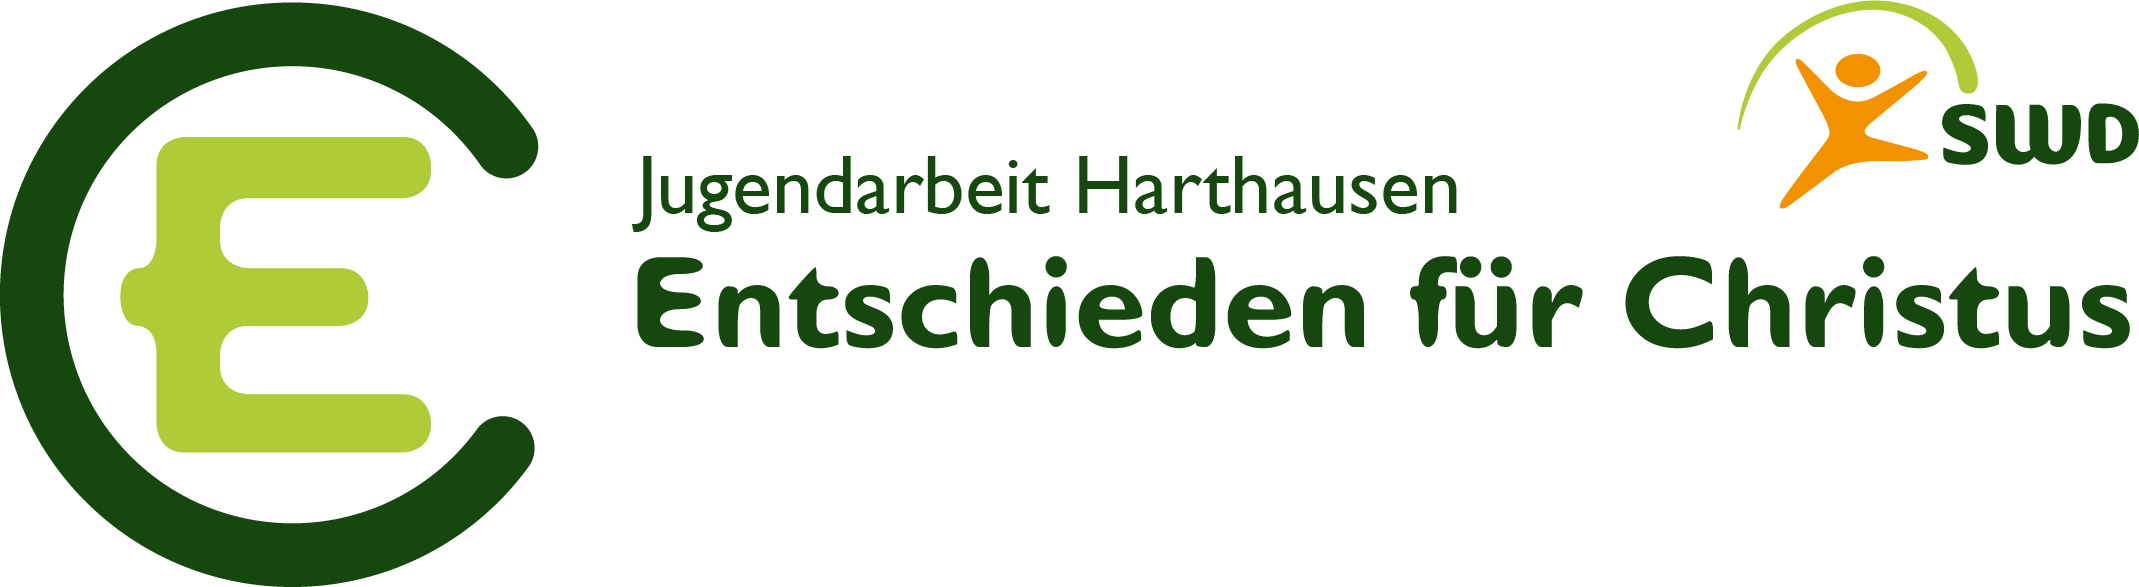 EC Harthausen